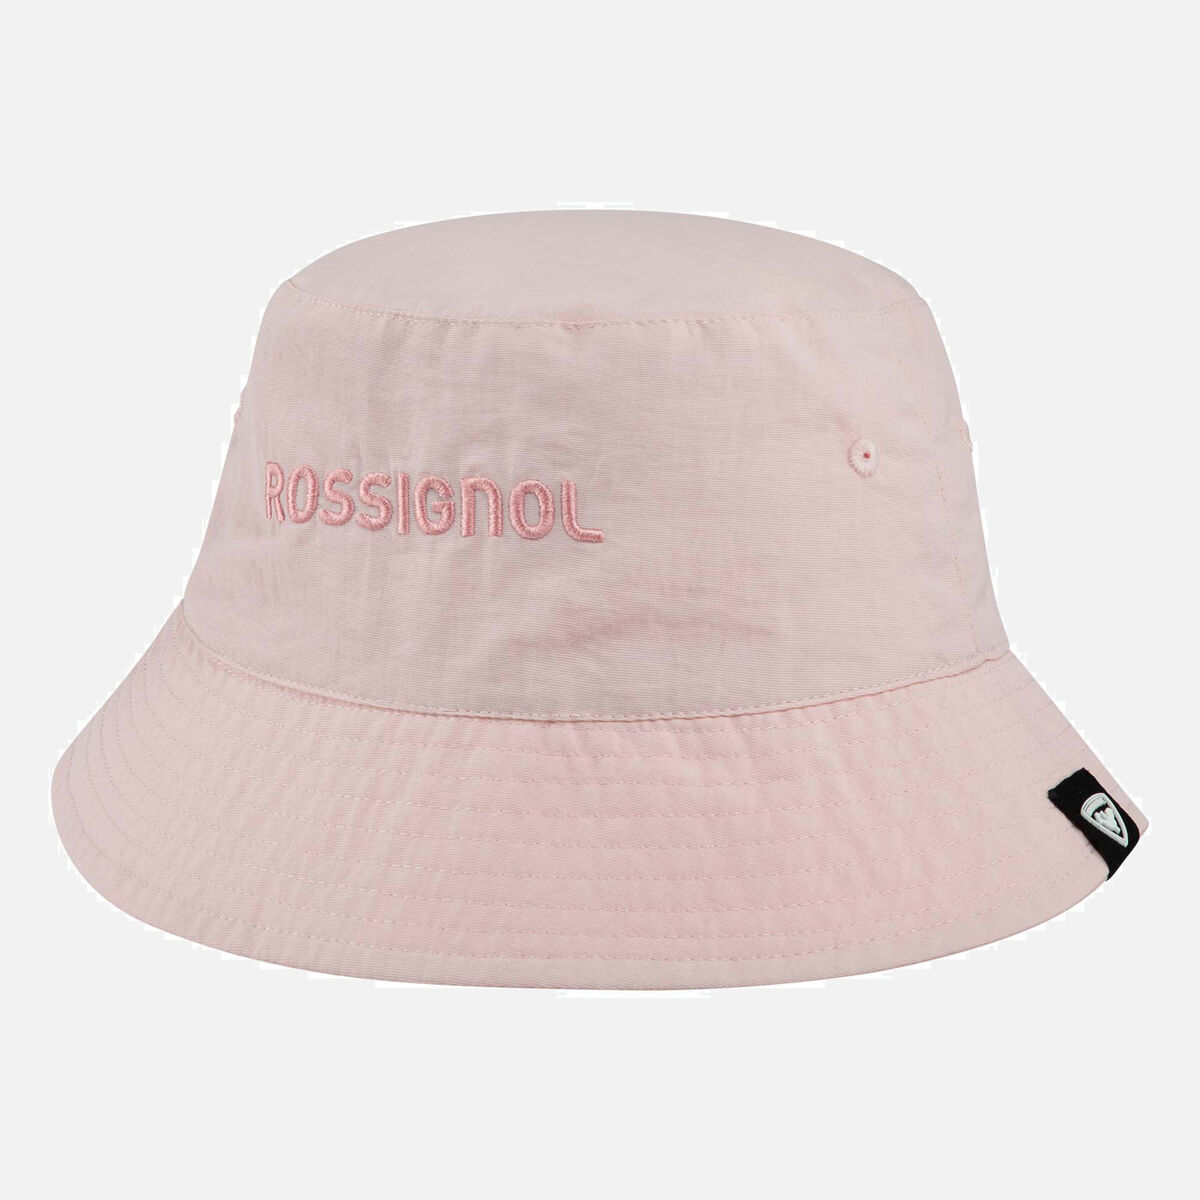 Rossignol Unisex Bucket Hat Pink/Purple